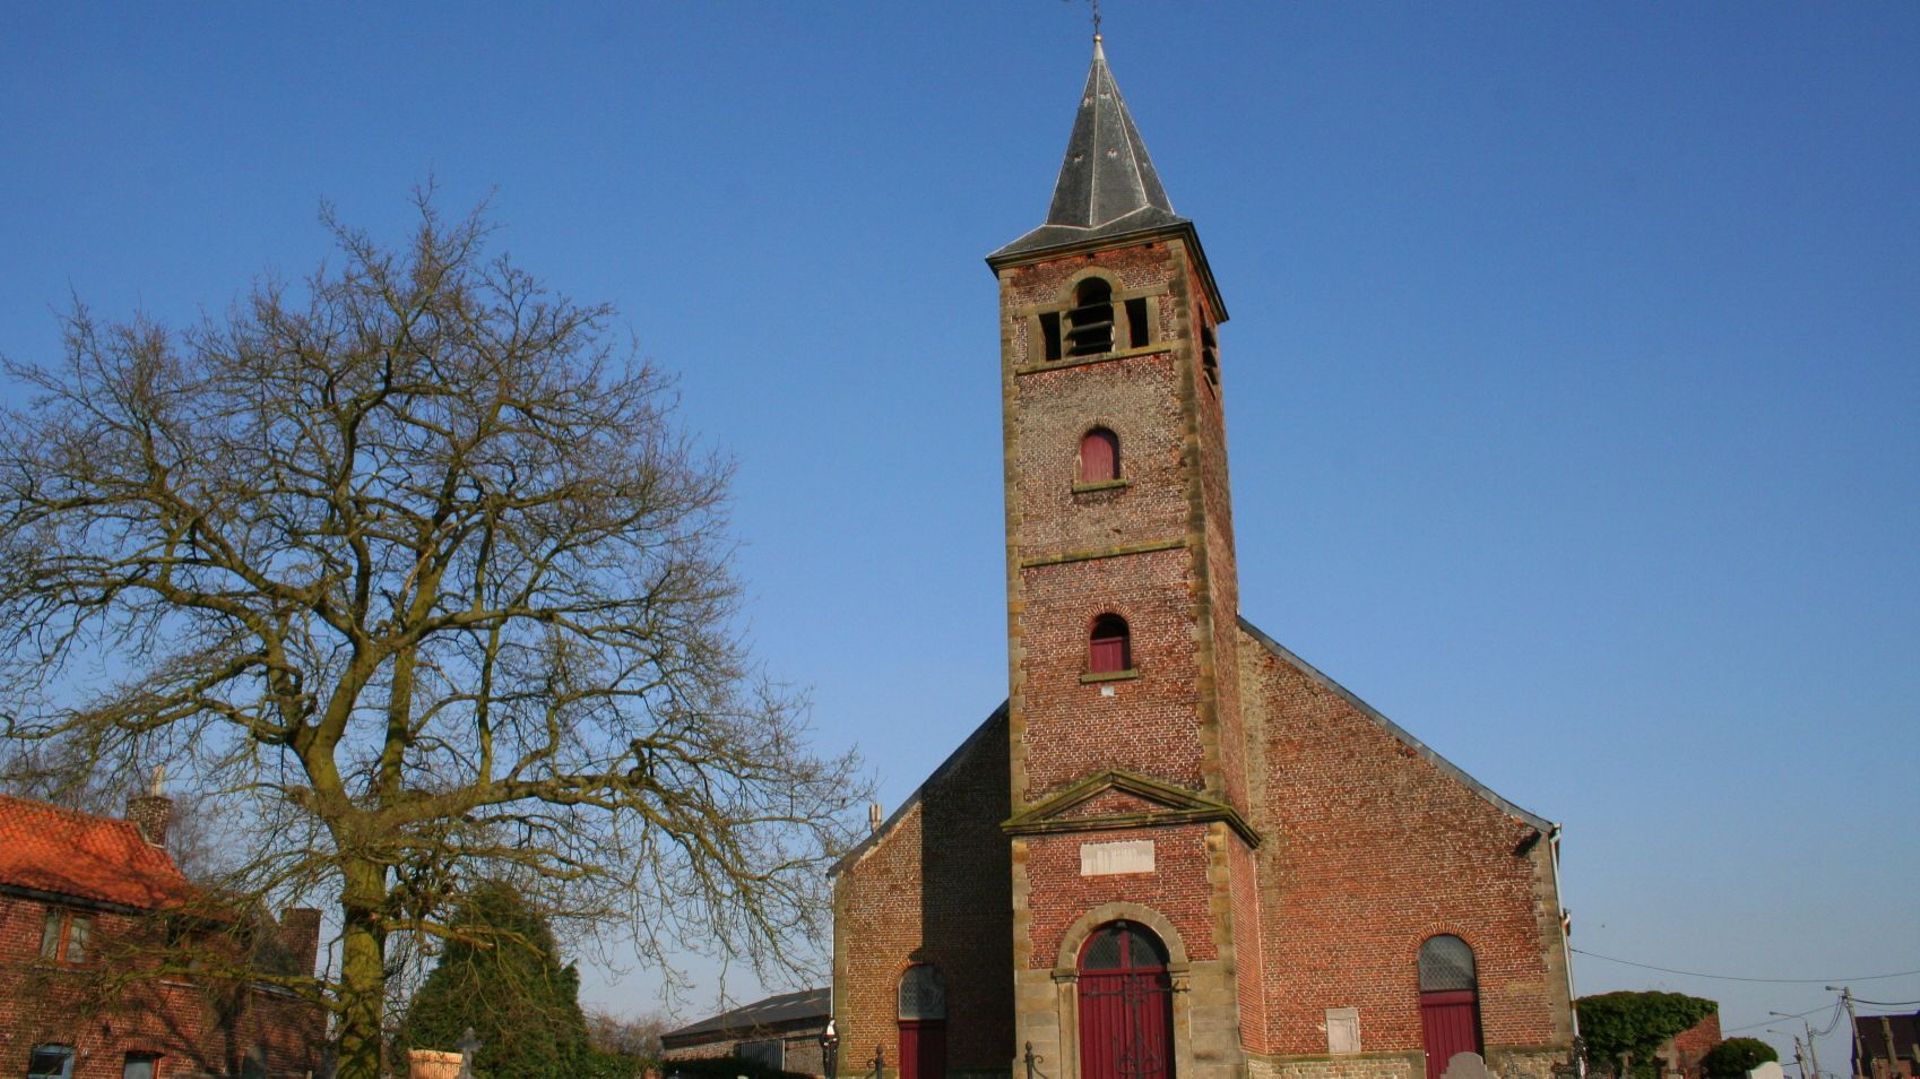 L’église Saint-Michel de Braffe dans la commune de Peruwelz